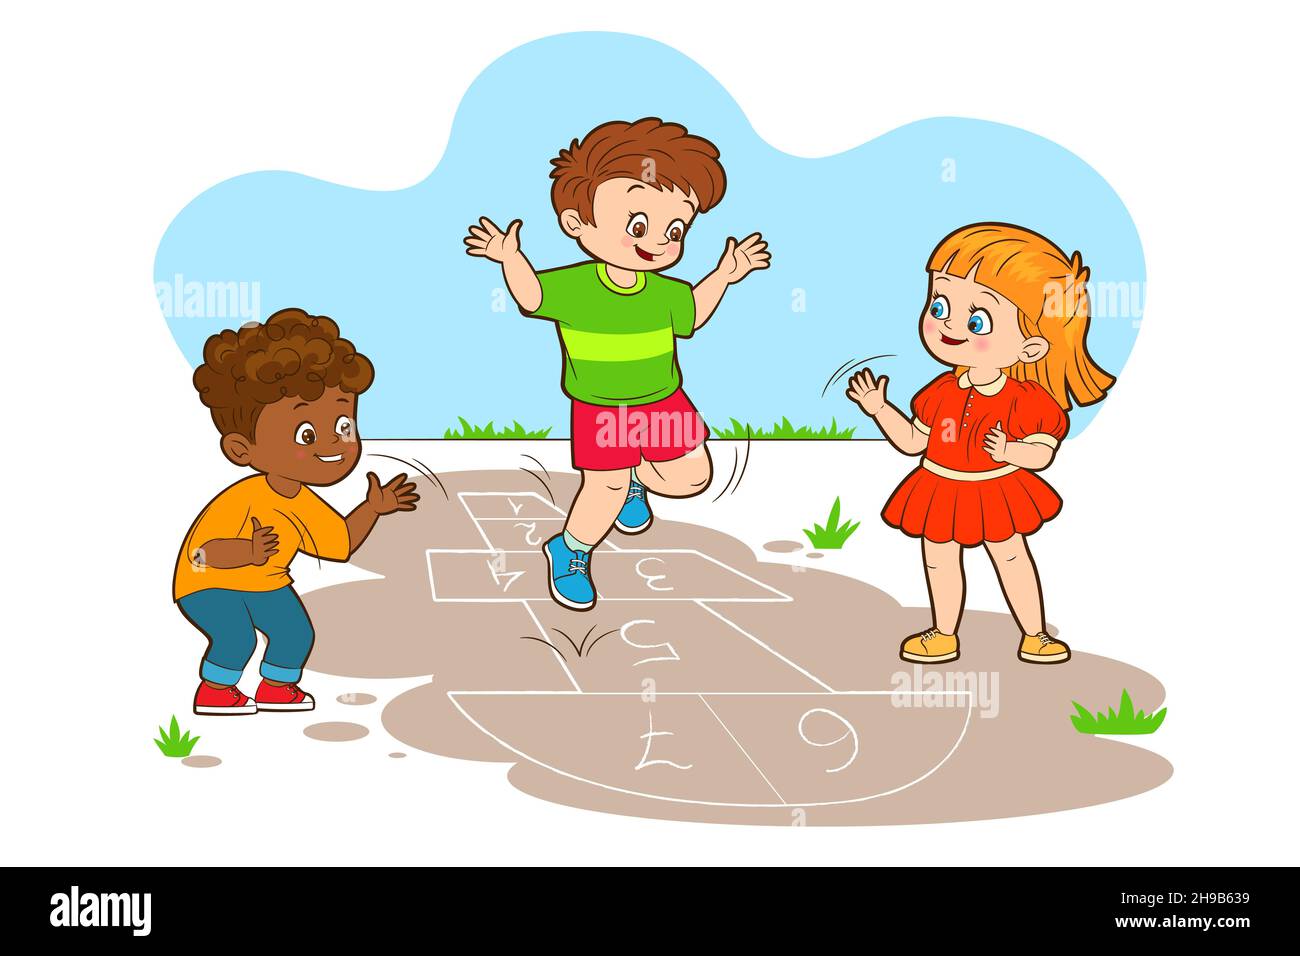 Deux garçons et une fille sautent tout en jouant au hopscotch.Illustration vectorielle de style dessin animé, dessin au trait noir et blanc Illustration de Vecteur